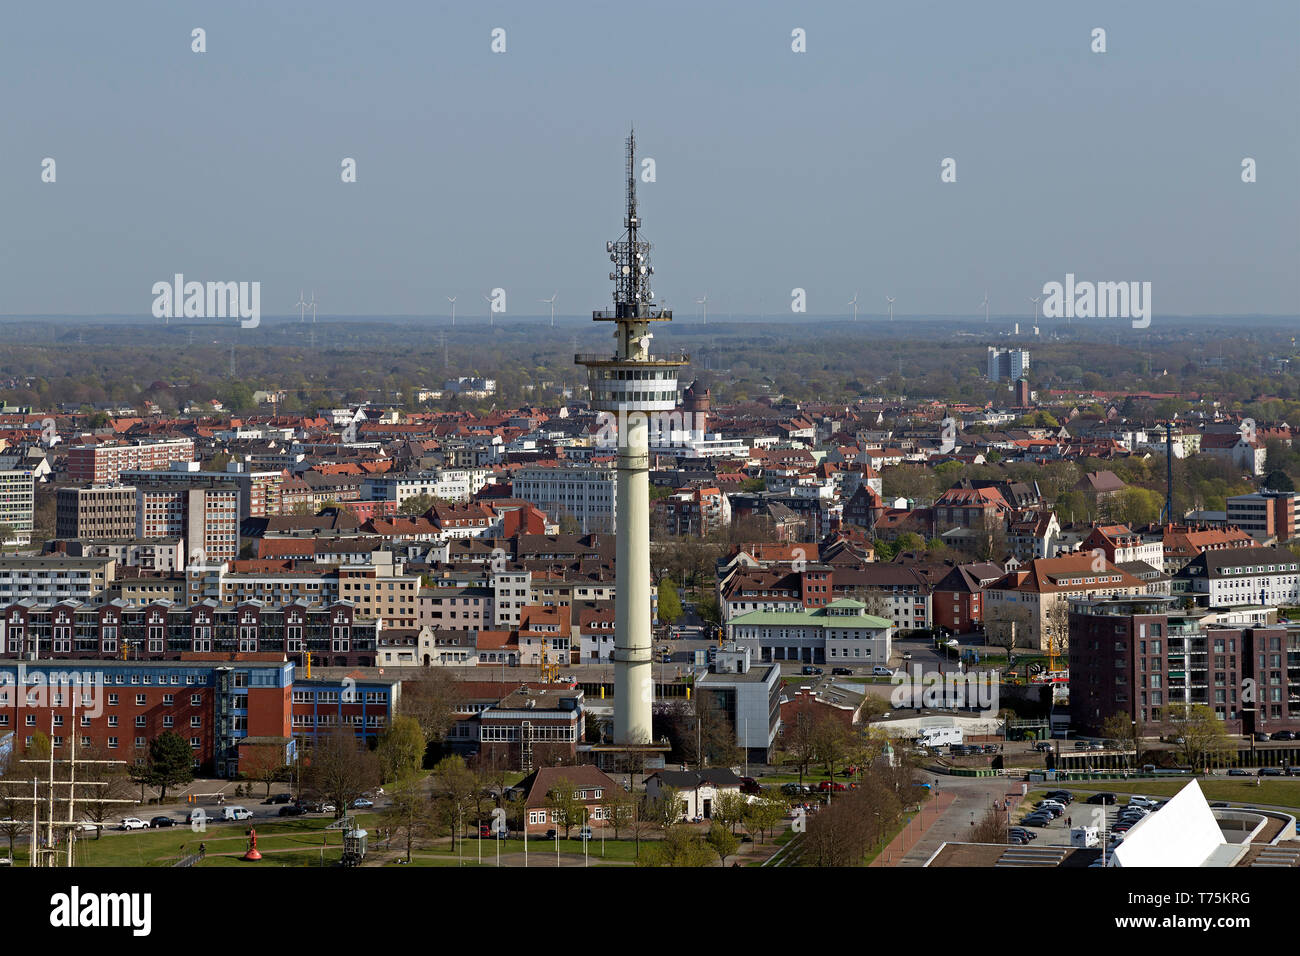 Blick auf den Fernsehturm von der Aussichtsplattform des Atlantic Hotel Sail City, Bremerhaven, Bremen, Deutschland Stockfoto